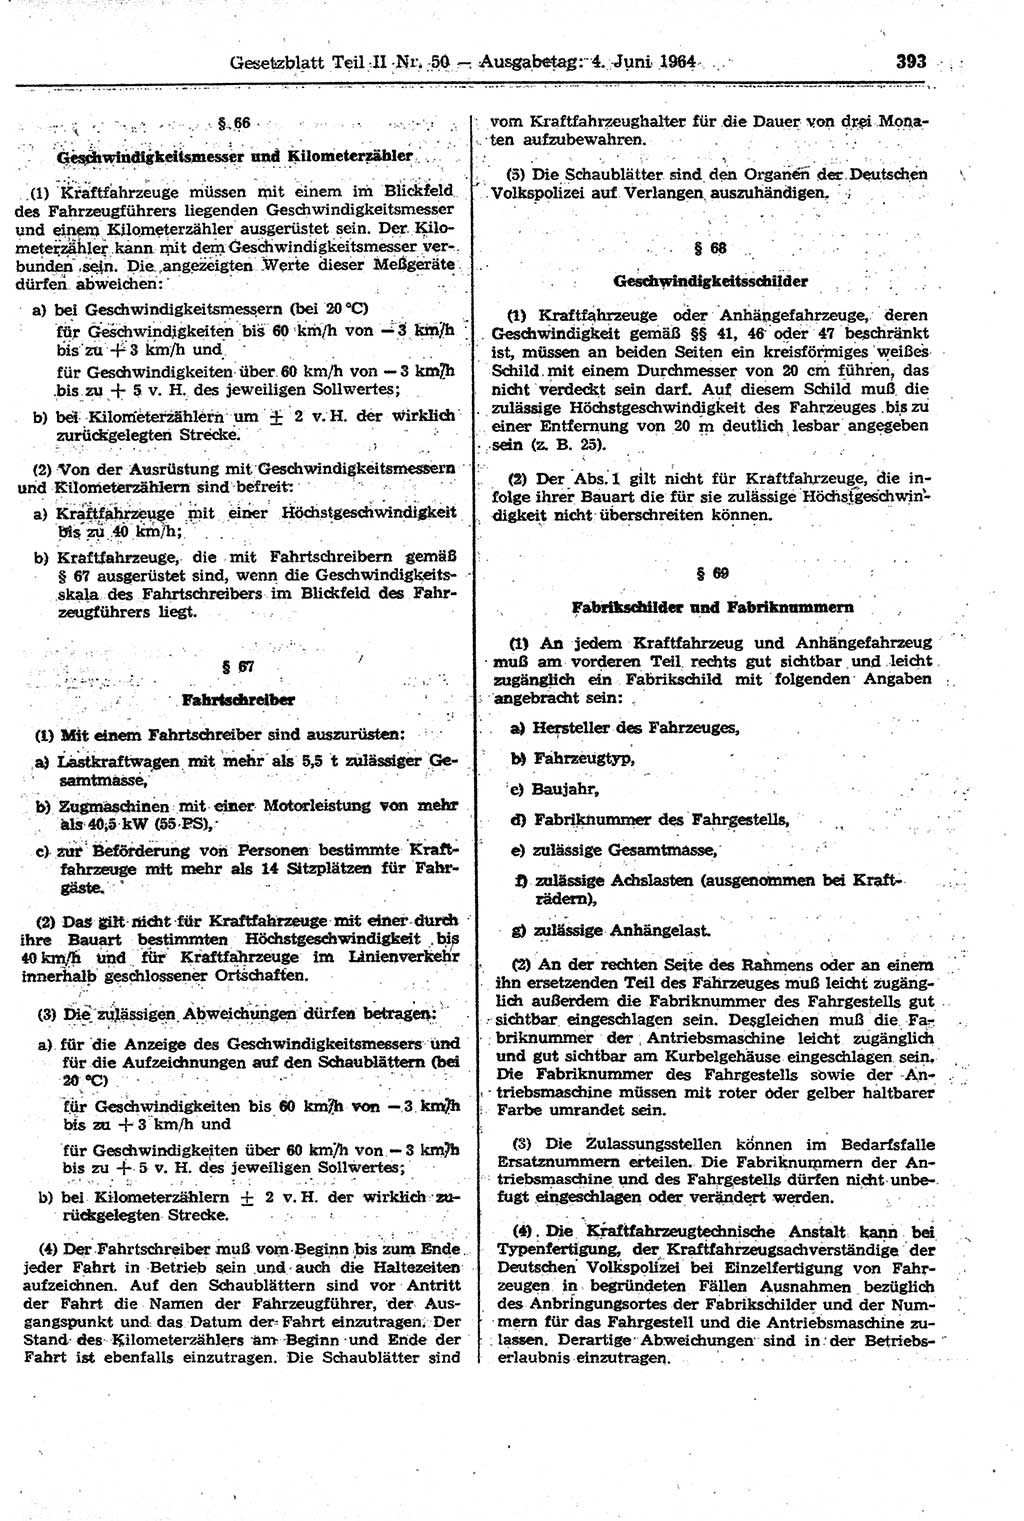 Gesetzblatt (GBl.) der Deutschen Demokratischen Republik (DDR) Teil ⅠⅠ 1964, Seite 393 (GBl. DDR ⅠⅠ 1964, S. 393)